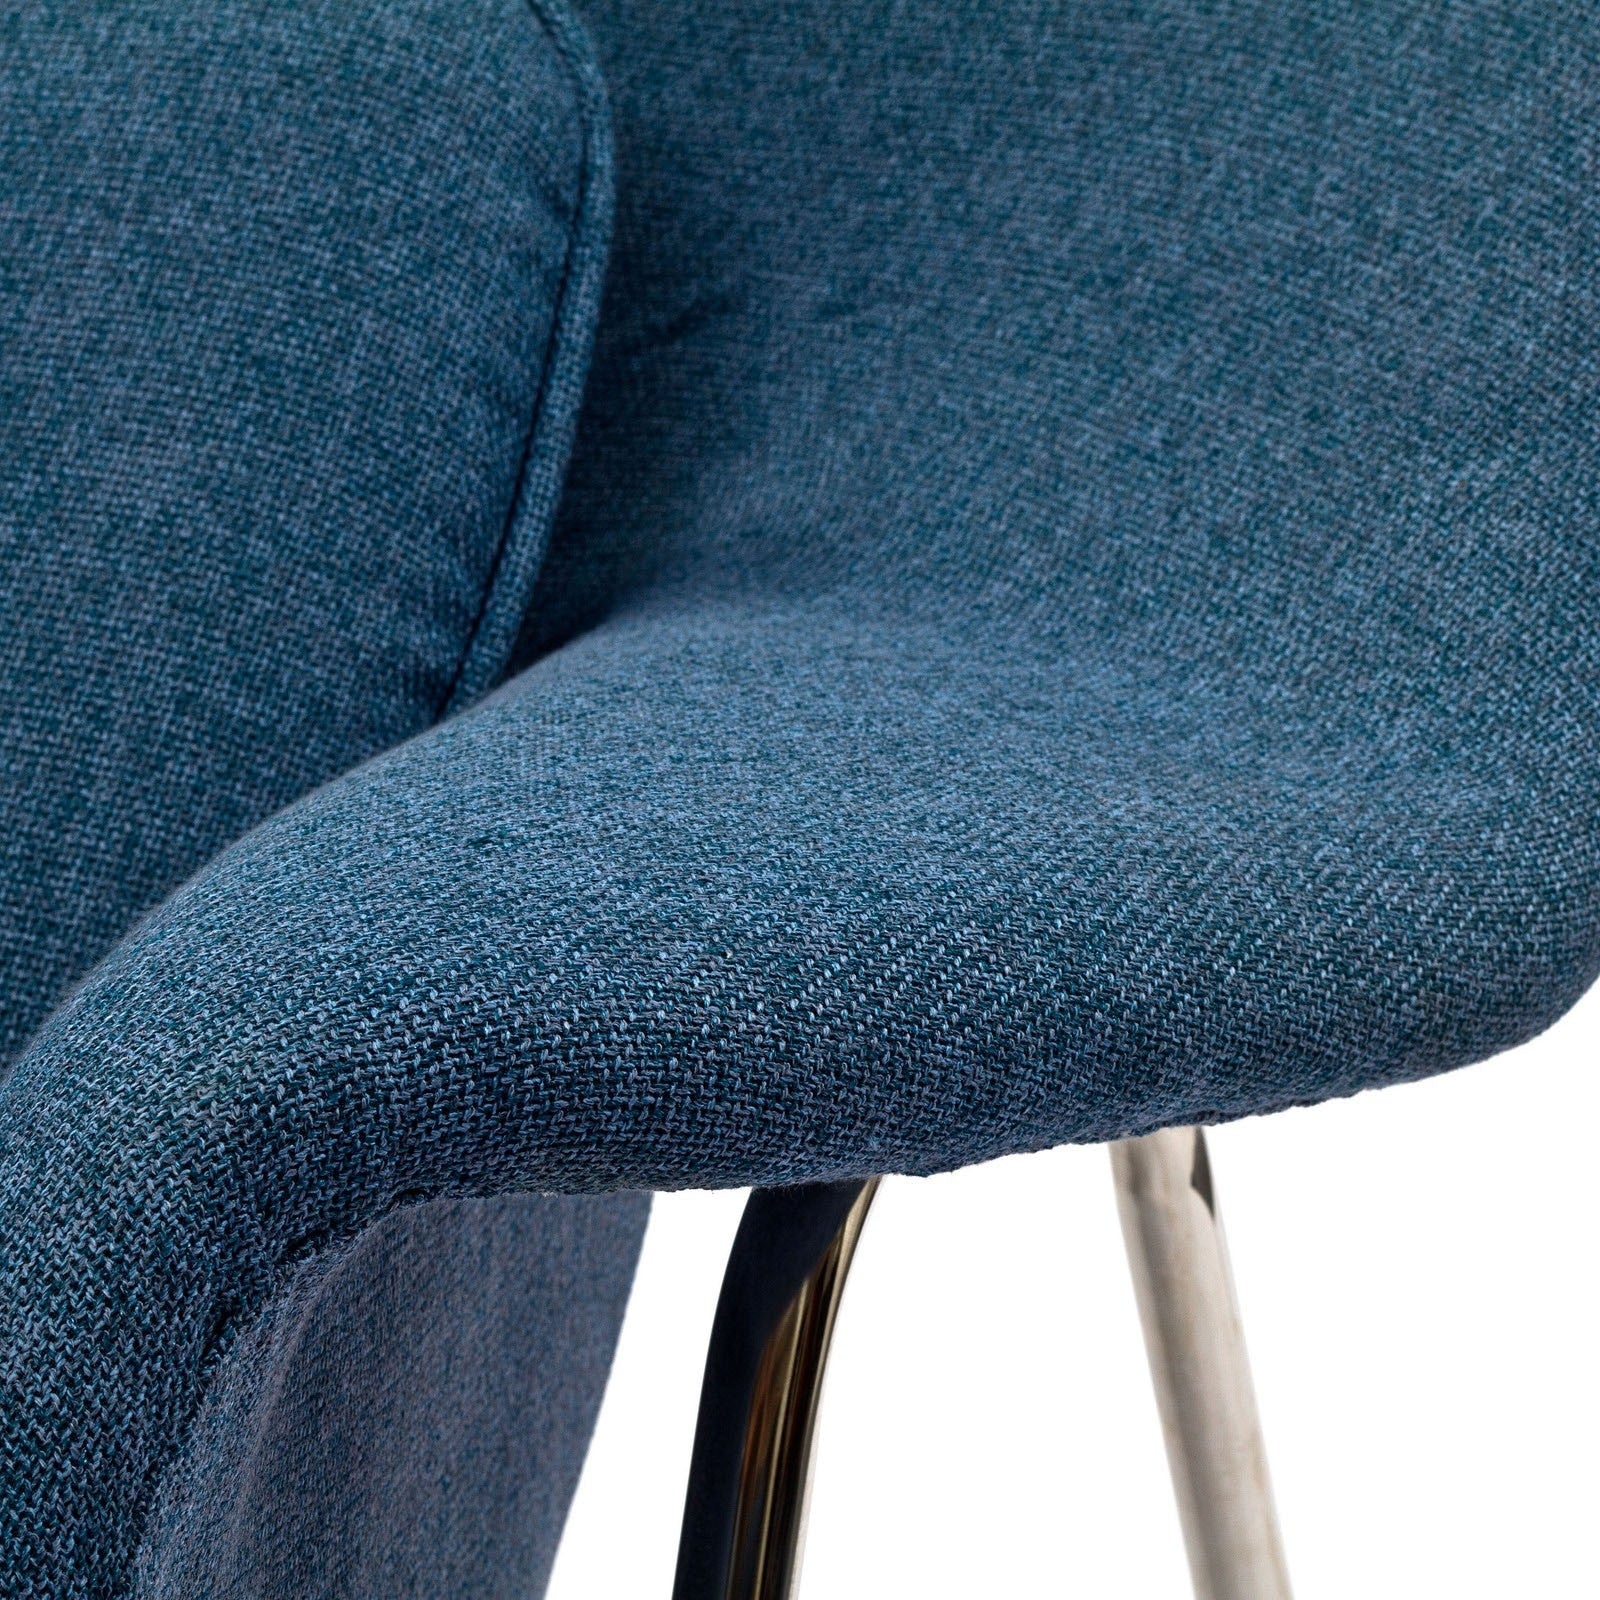 Wander Lounge Chair Blue Tweed